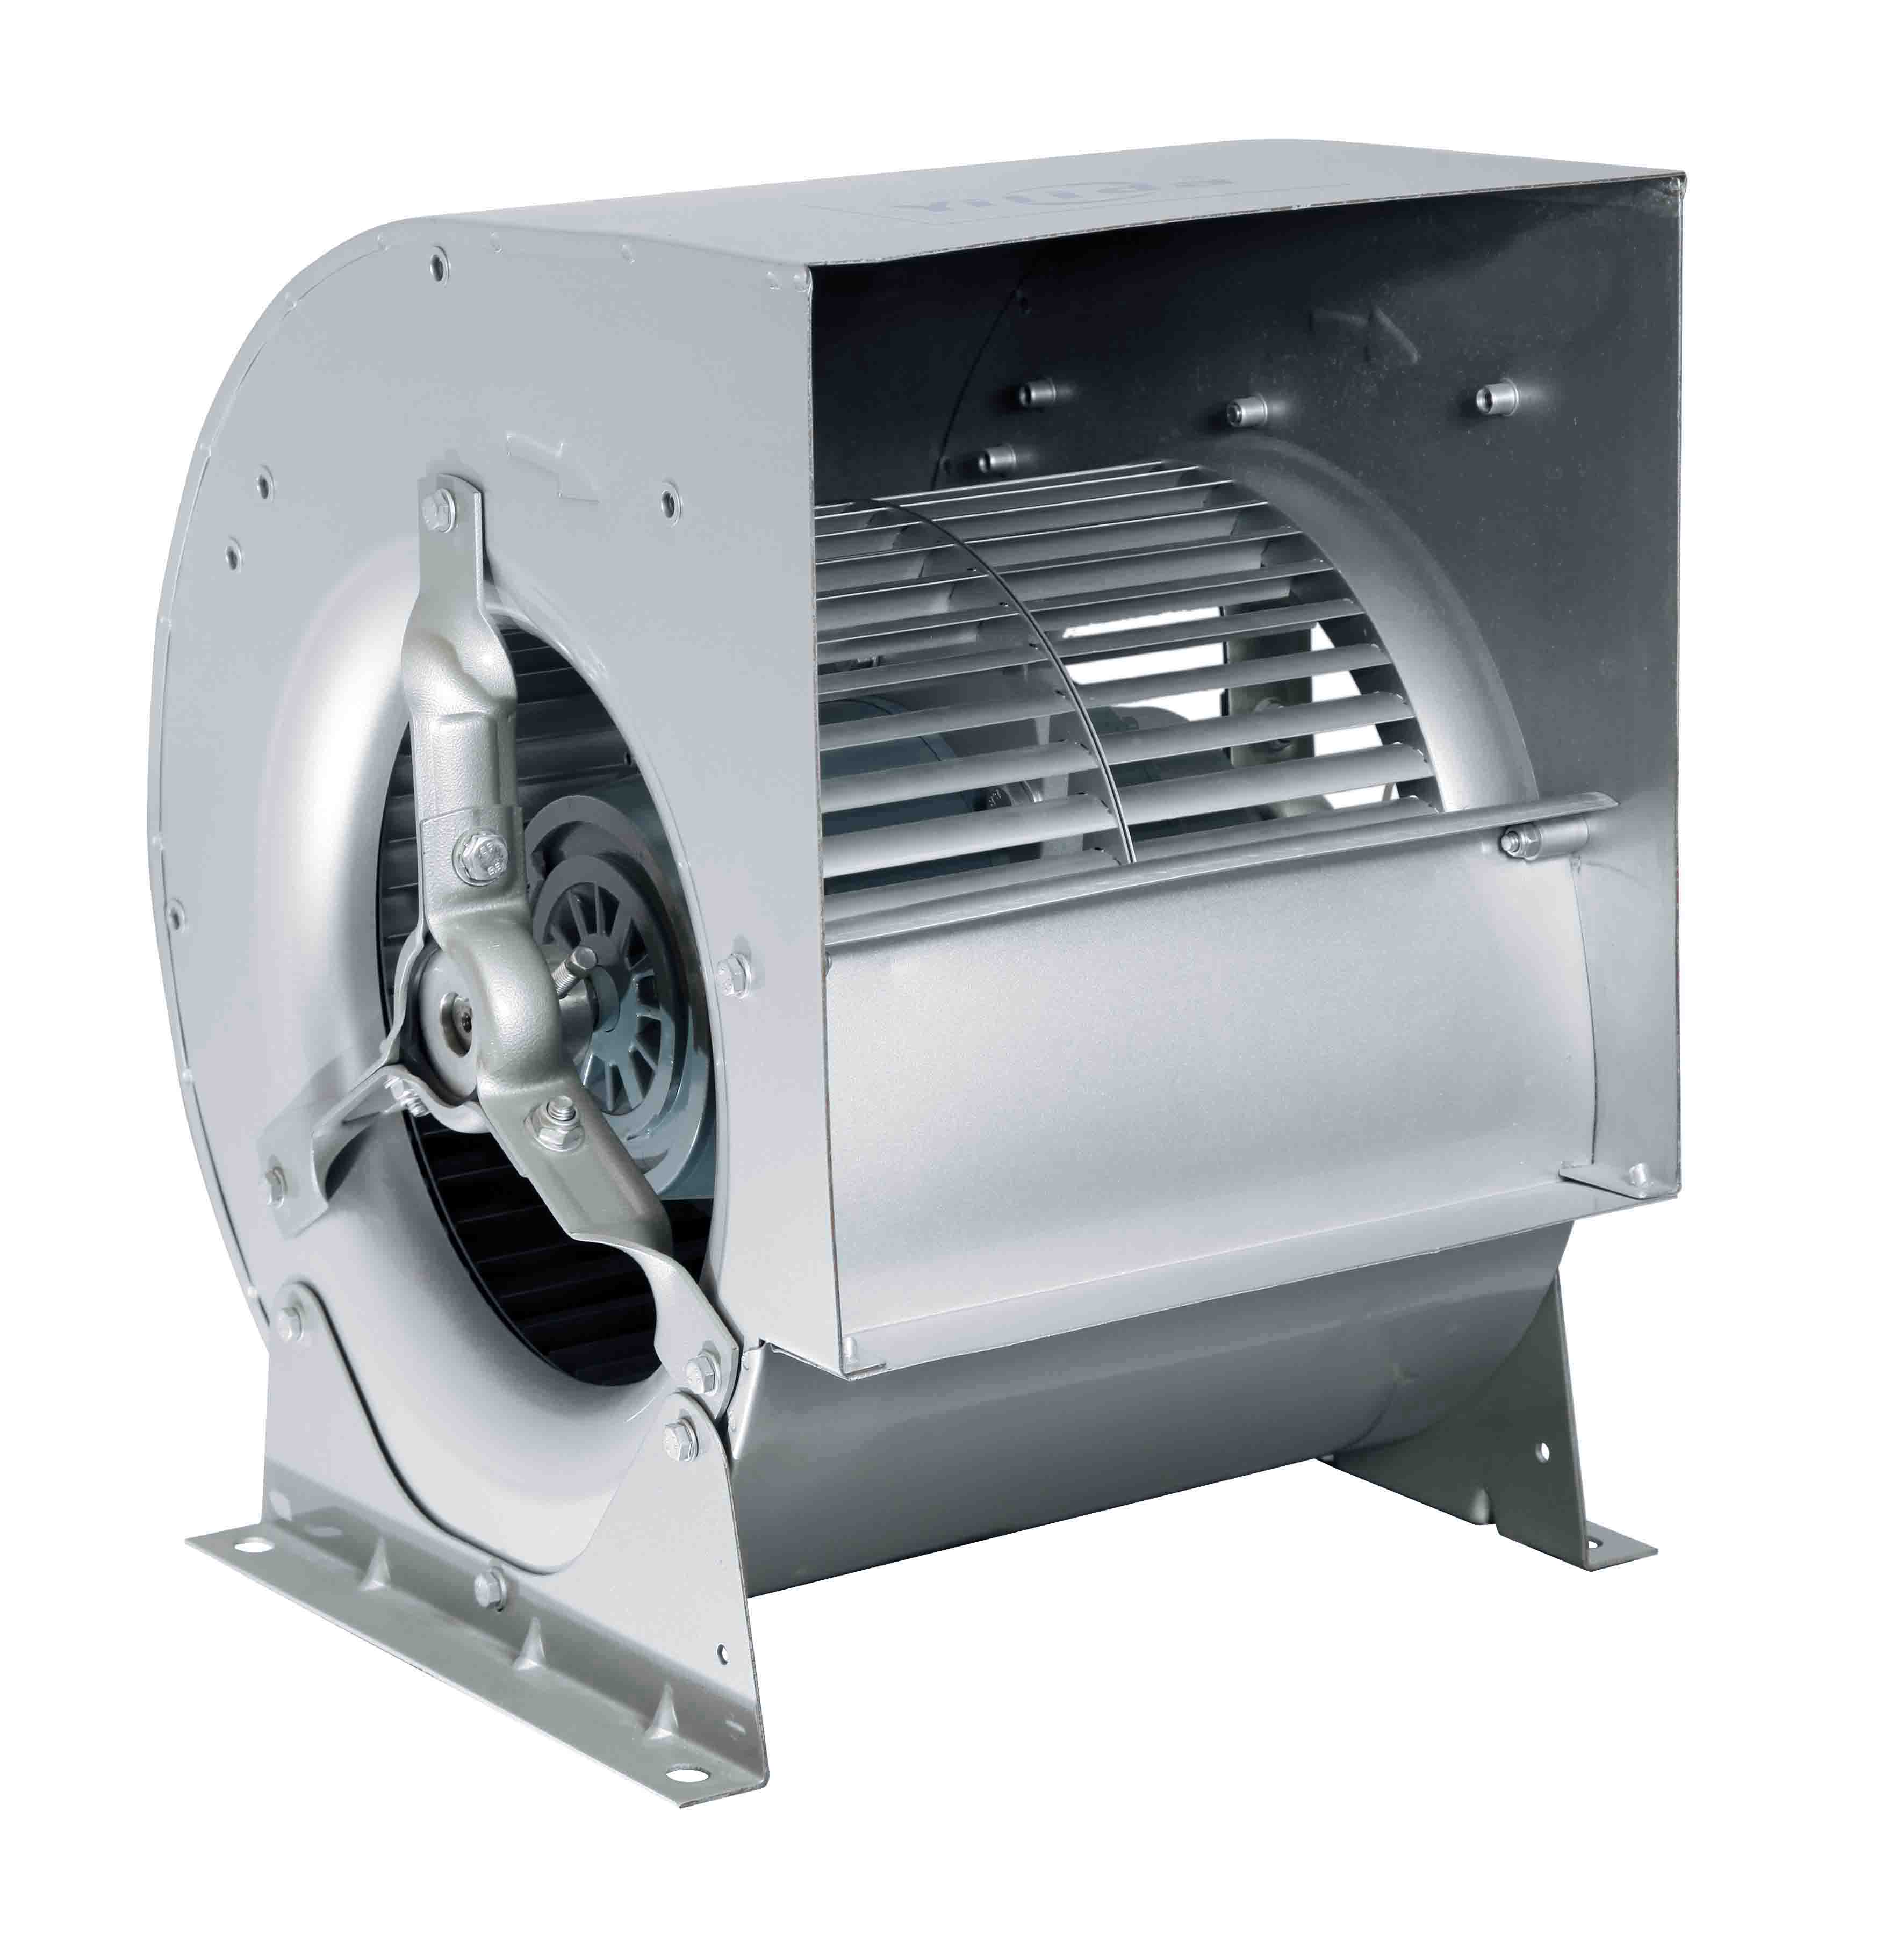 Kiváló minőségű konyhai kipufogó LKB sorozat, egy bemeneti centrifugális ventilátor